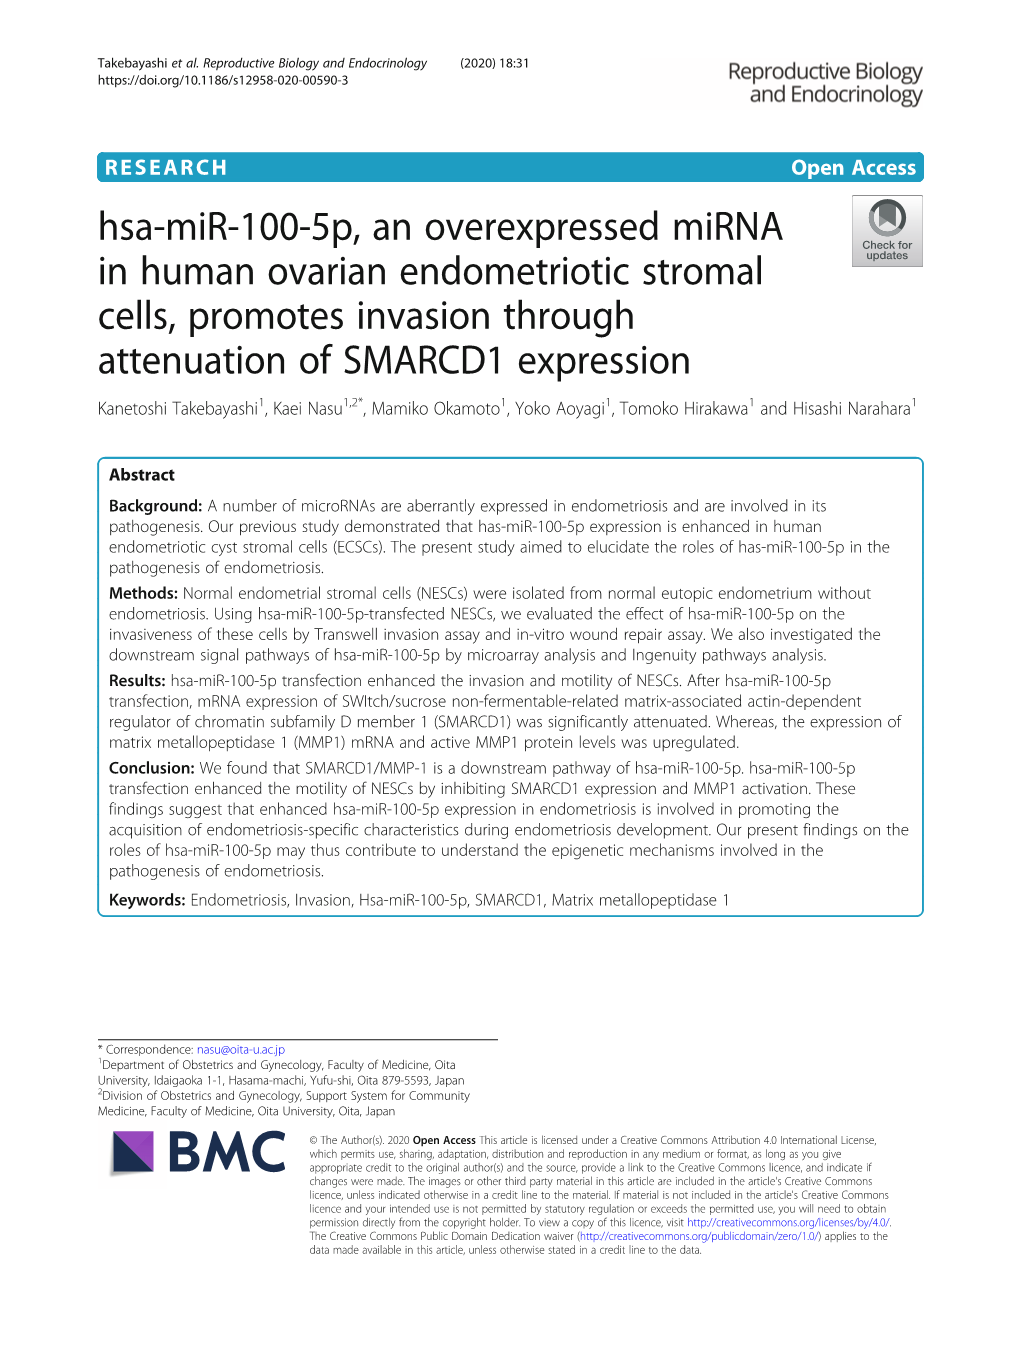 Hsa-Mir-100-5P, an Overexpressed Mirna in Human Ovarian